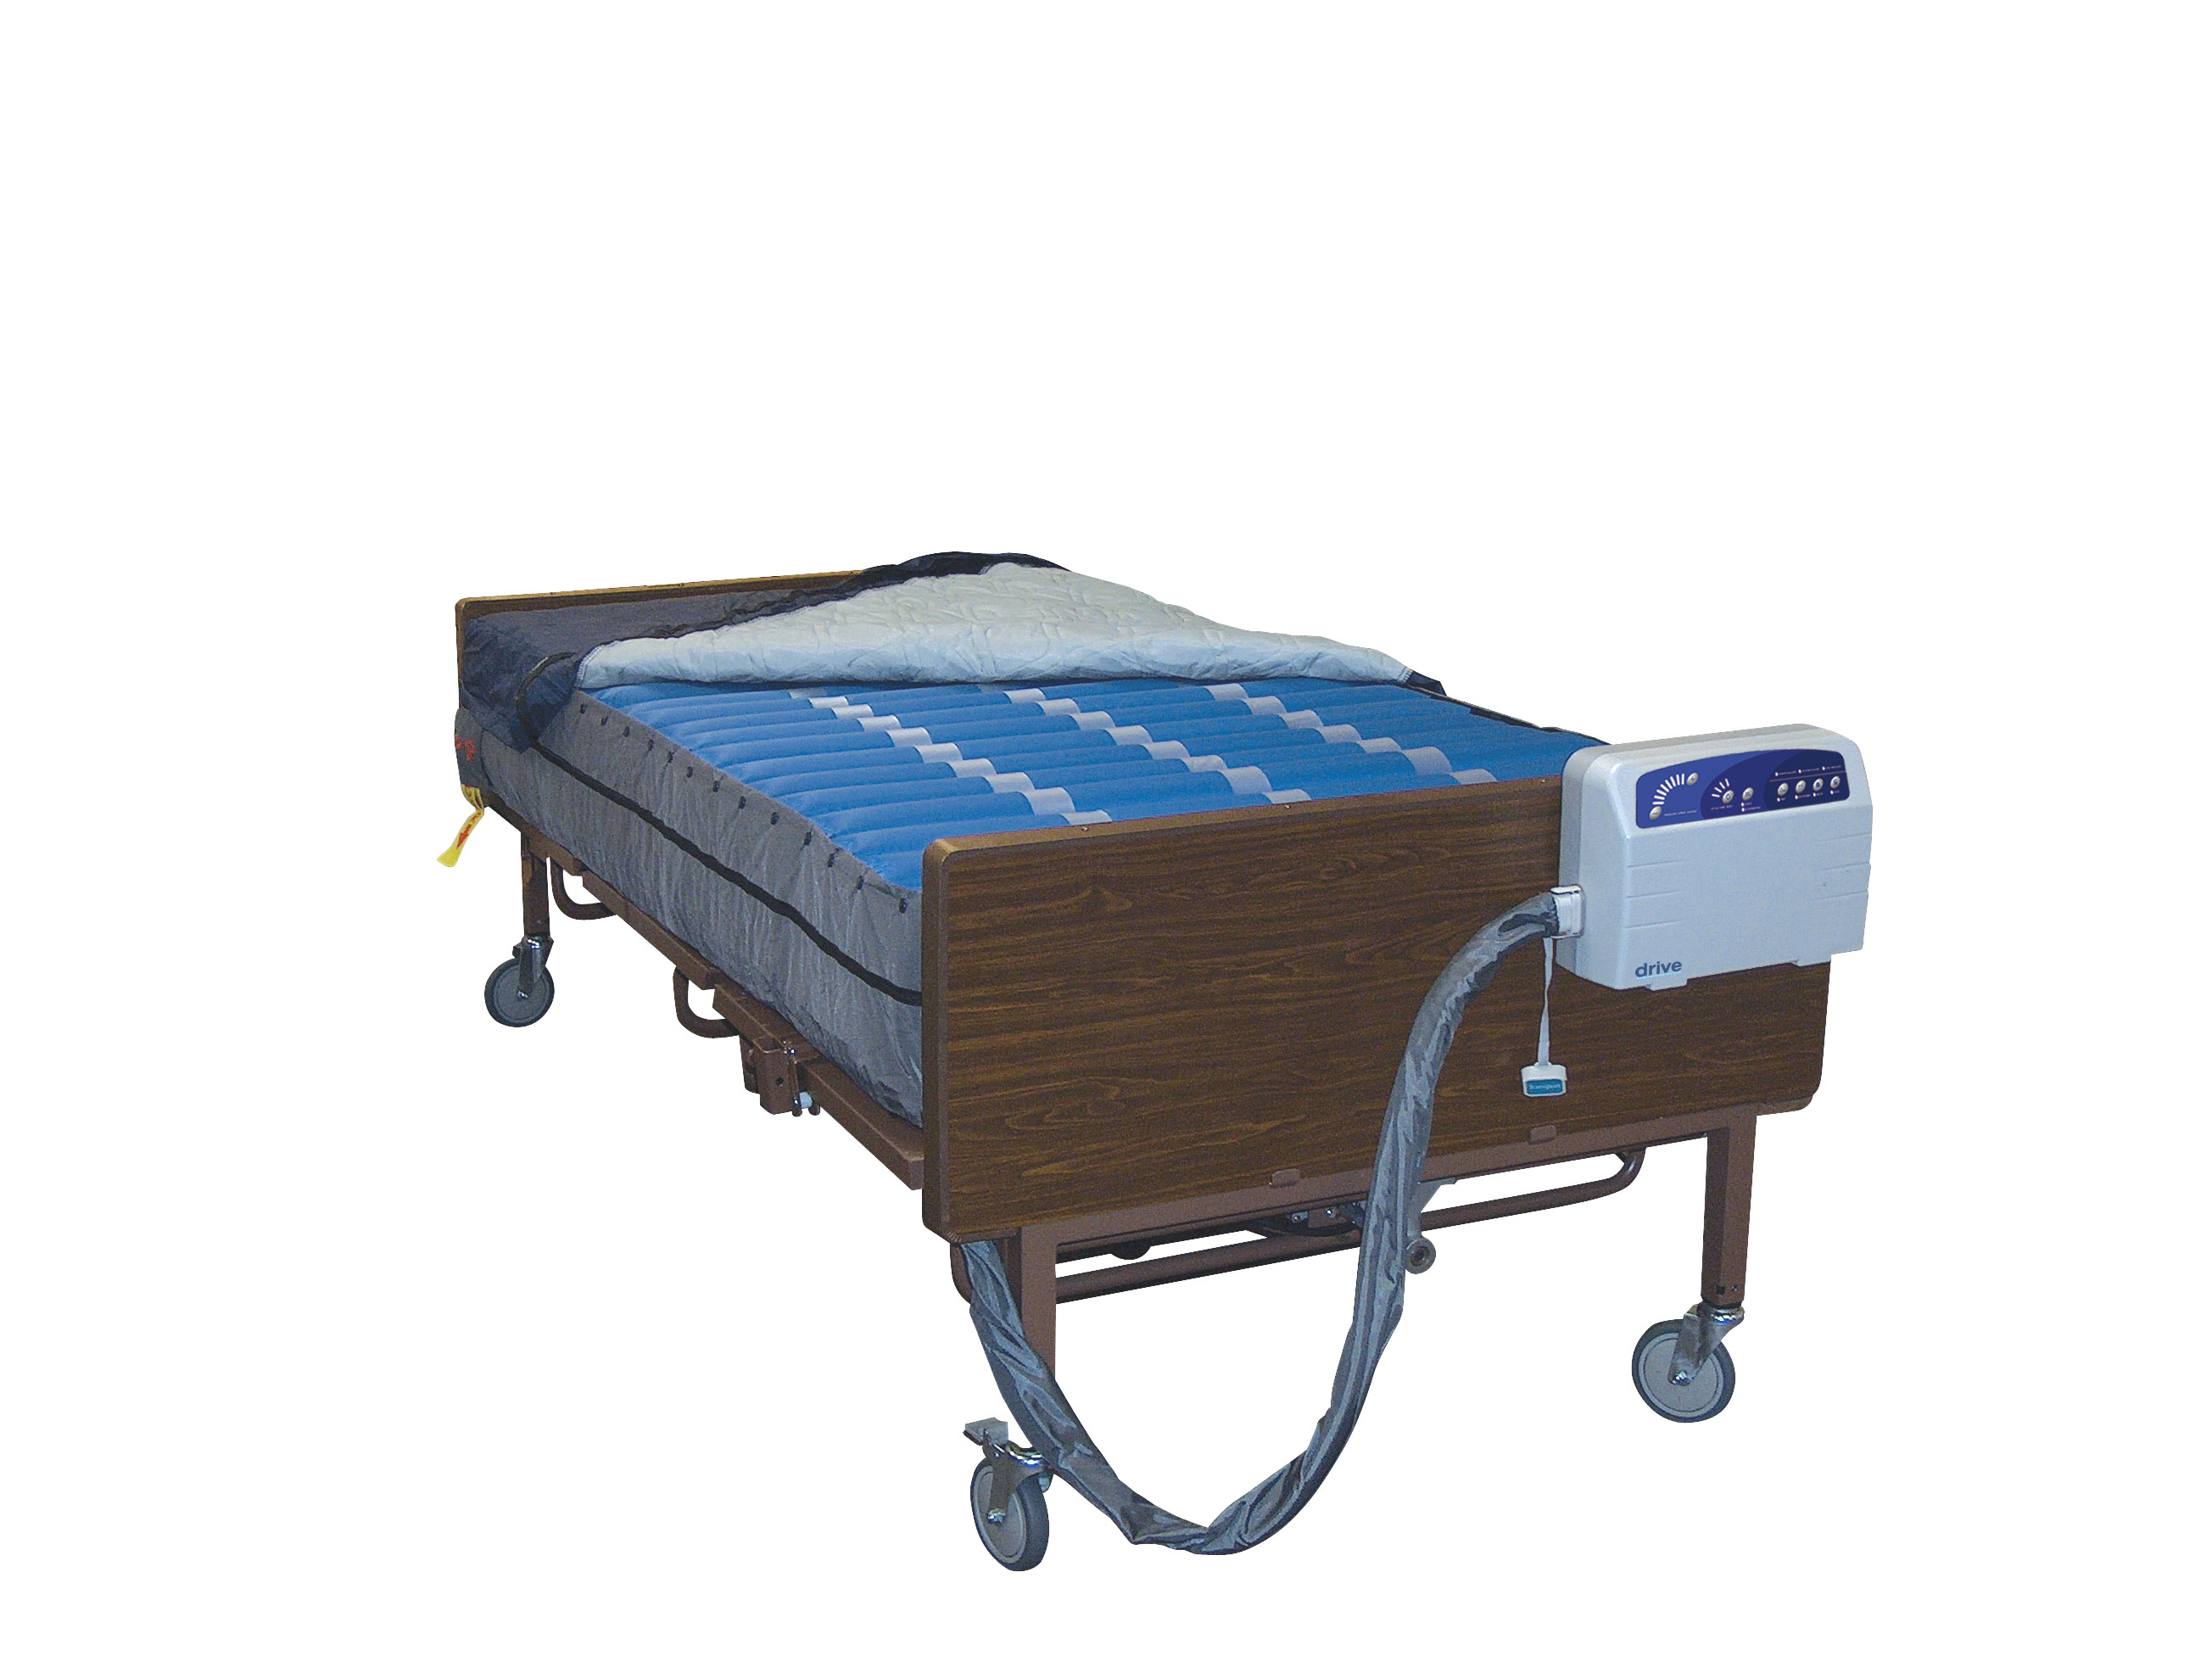 14030 air pressure mattress by drive